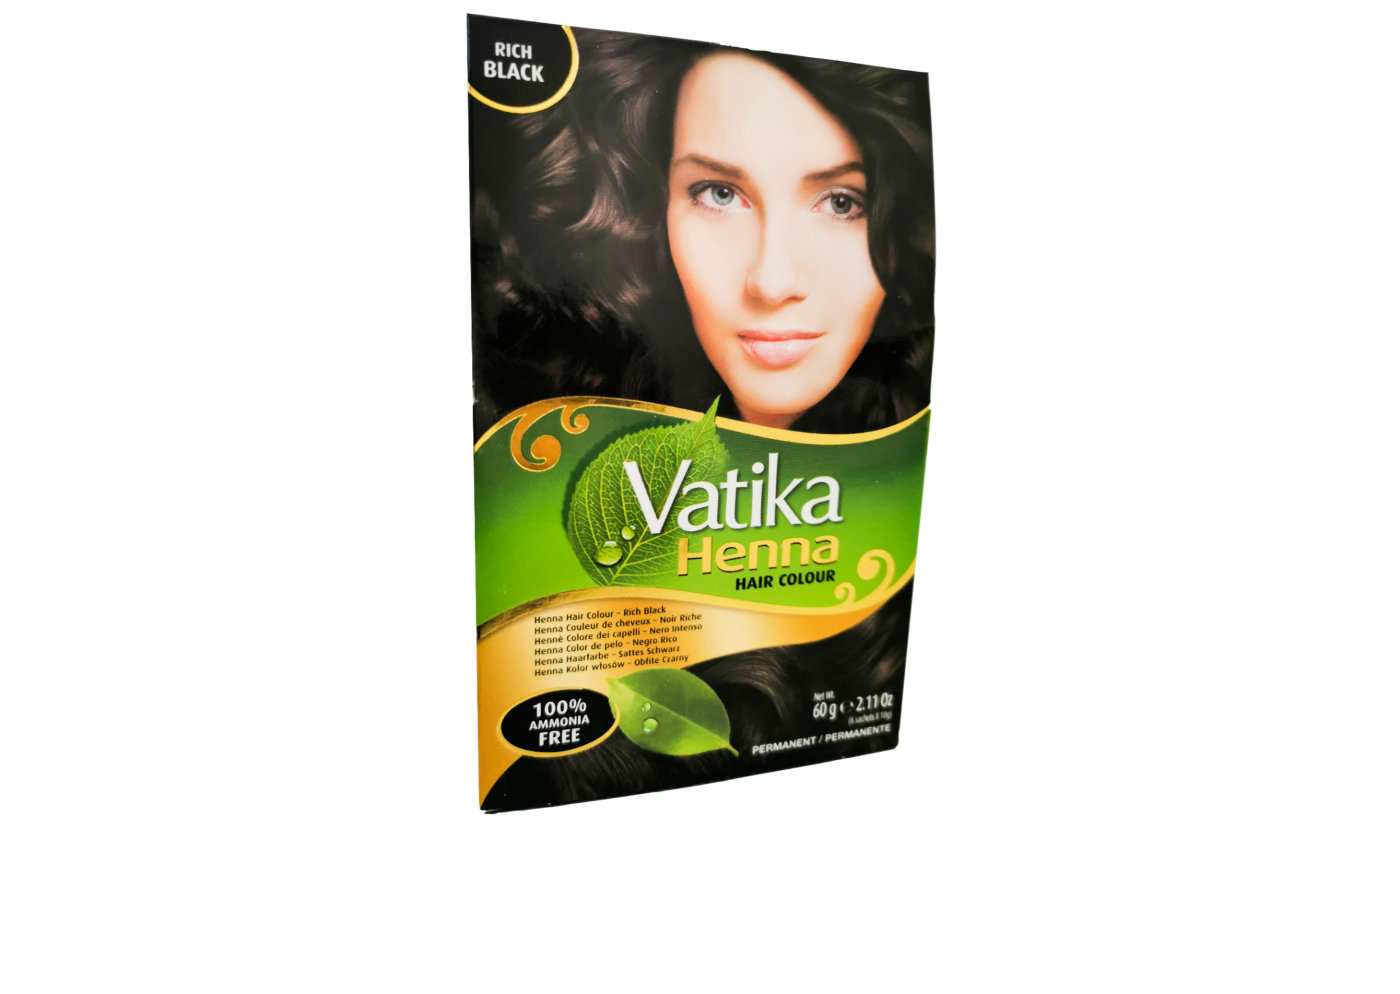 Vatika Henna Hair Colour (Rich Black)